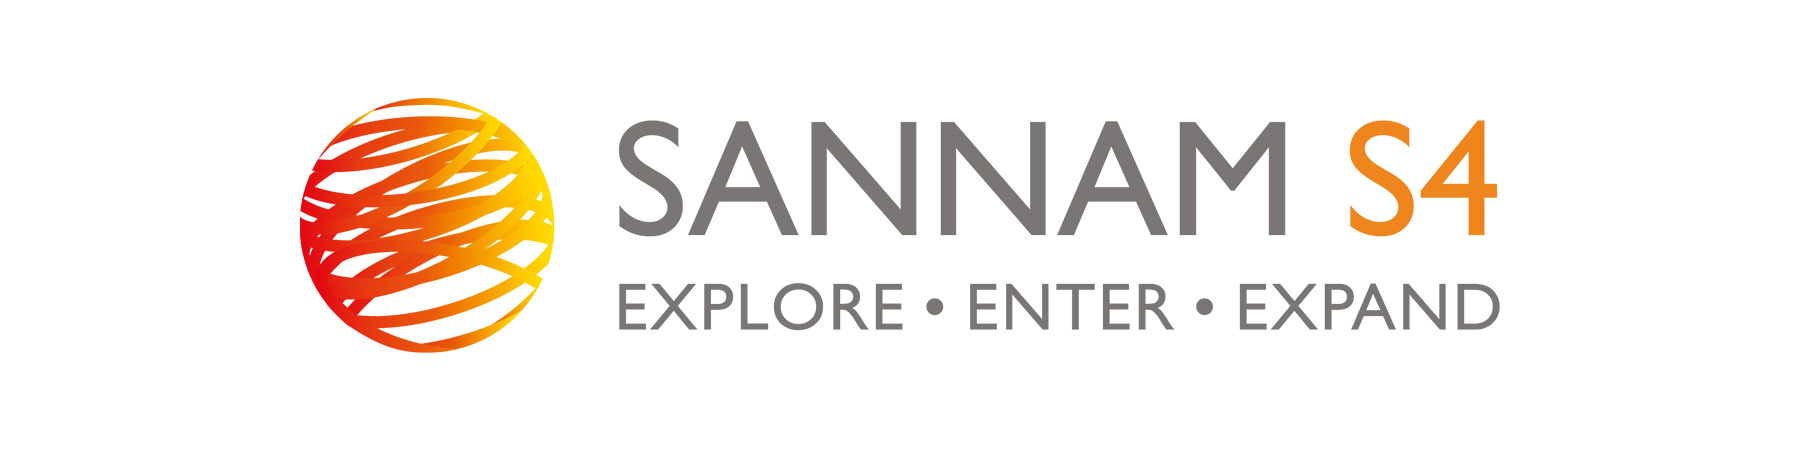 Sannam S4